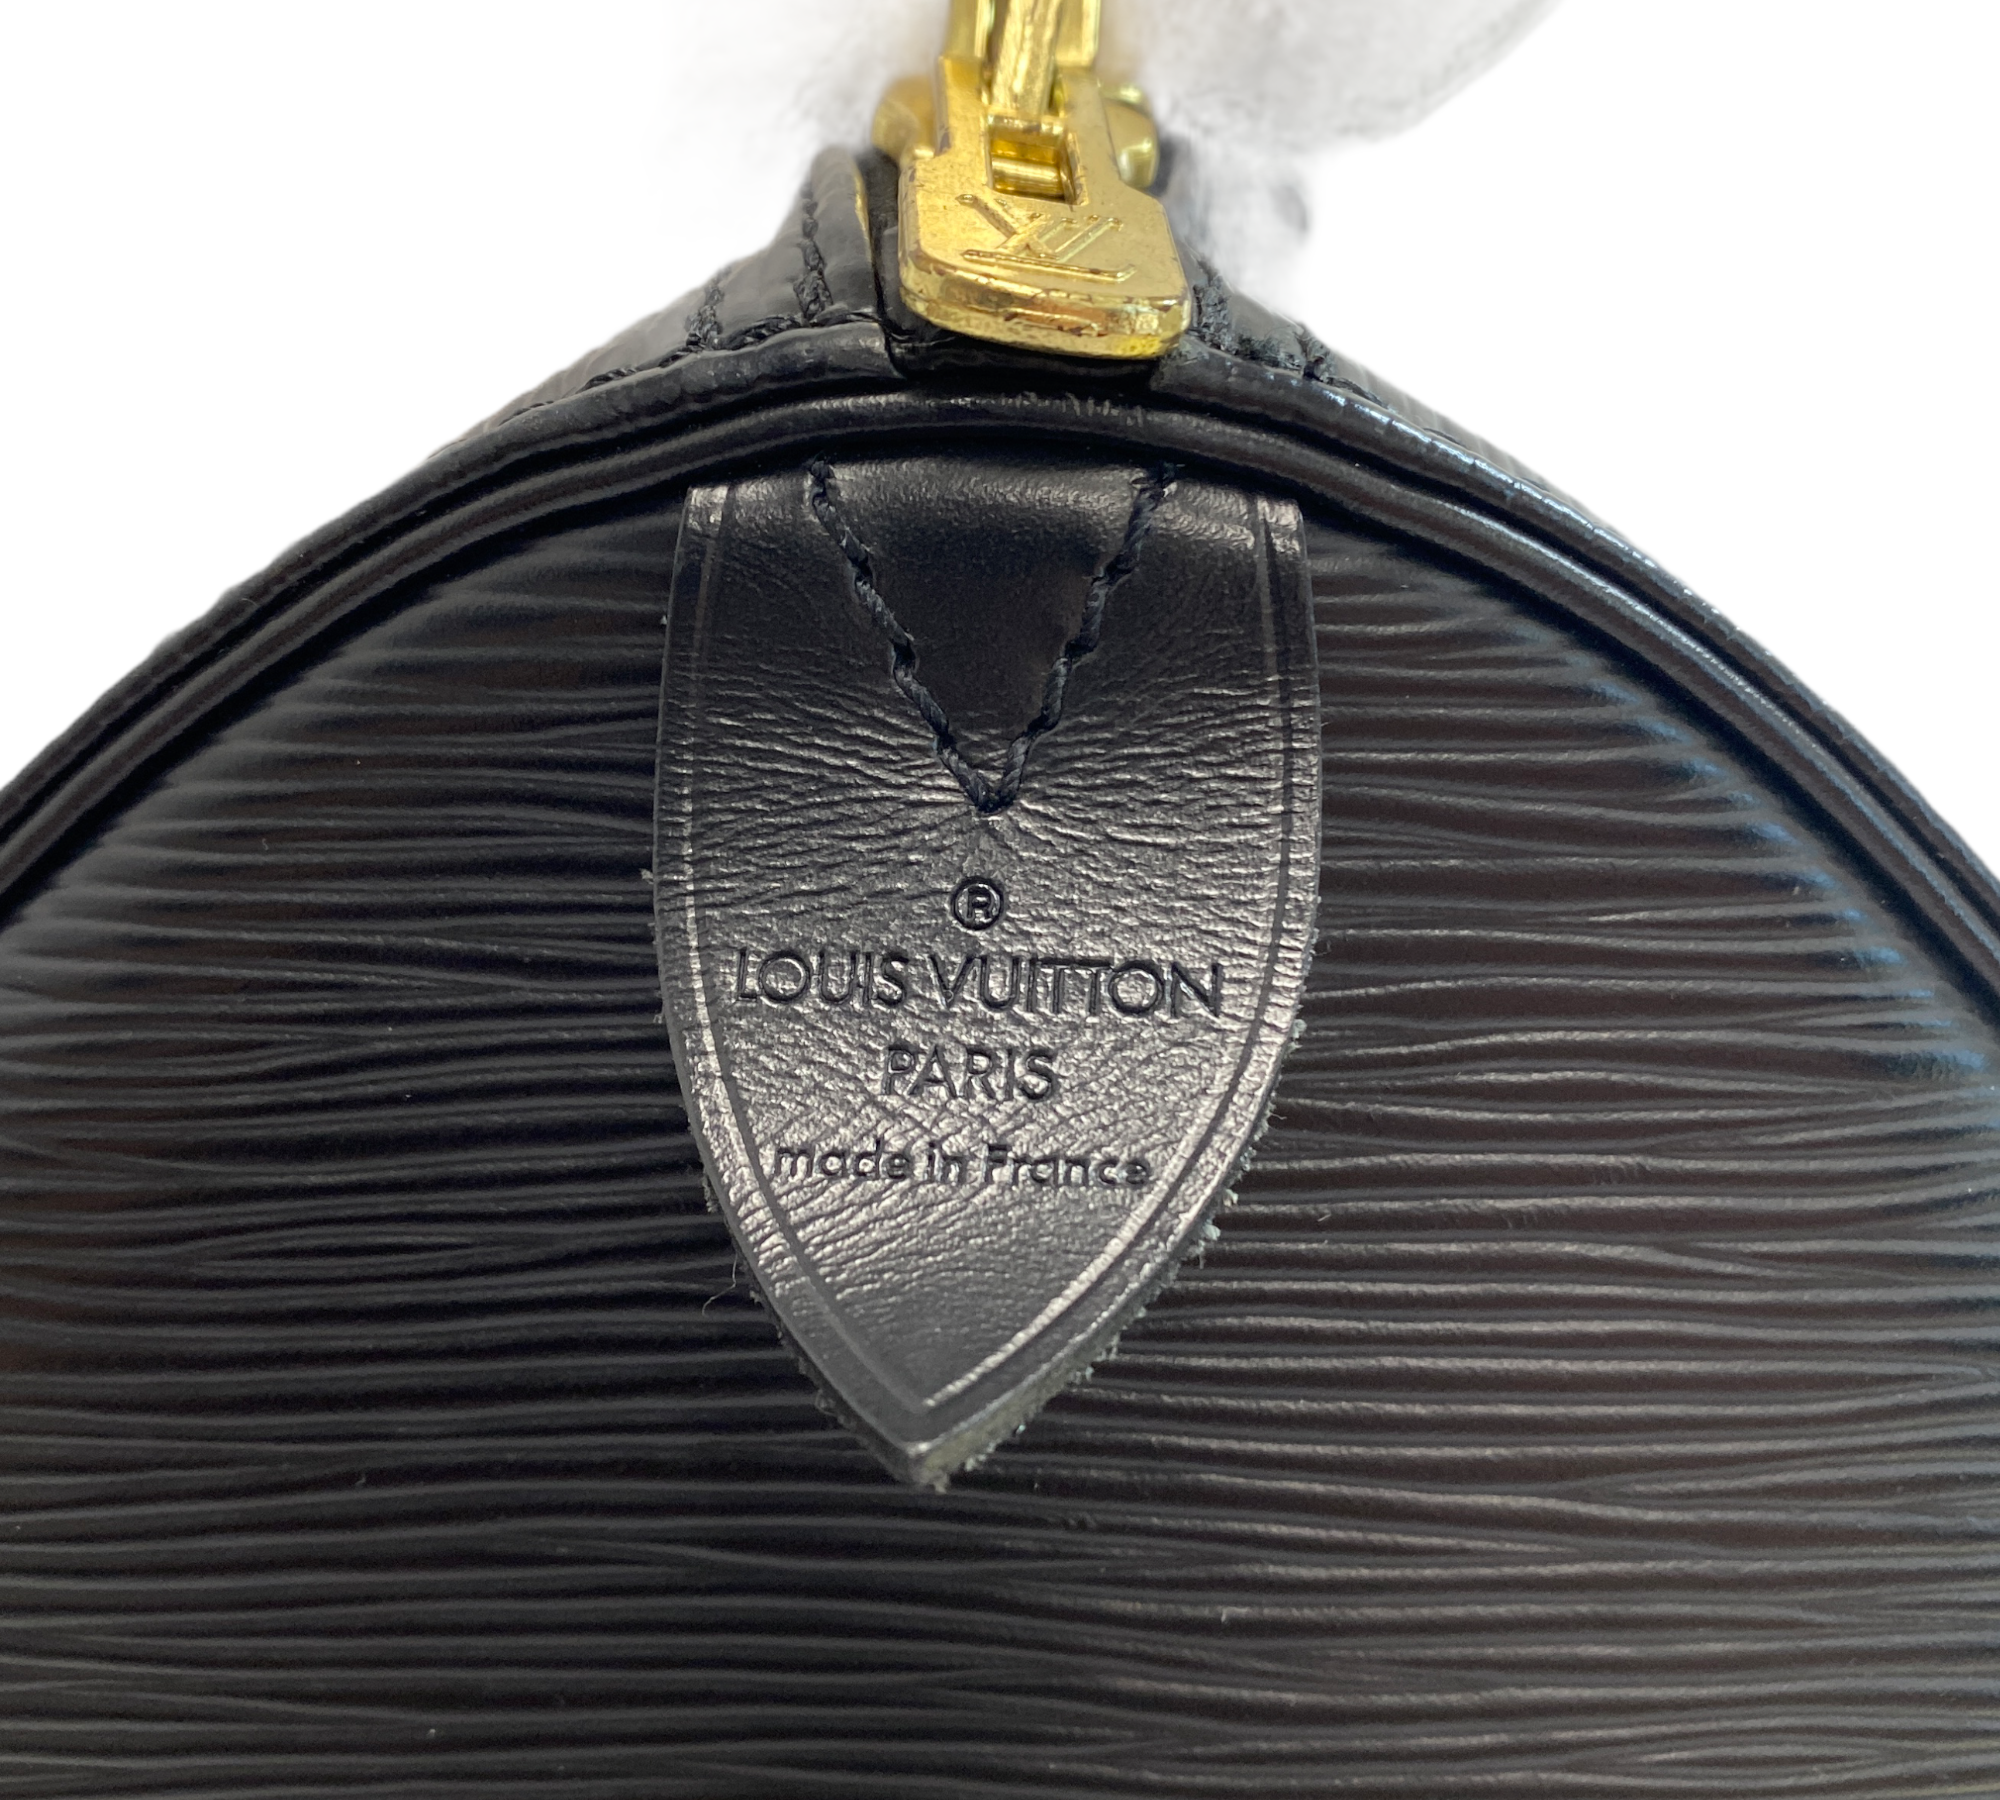 Shop for Louis Vuitton Black Epi Leather Keepall 50 cm Duffle Bag